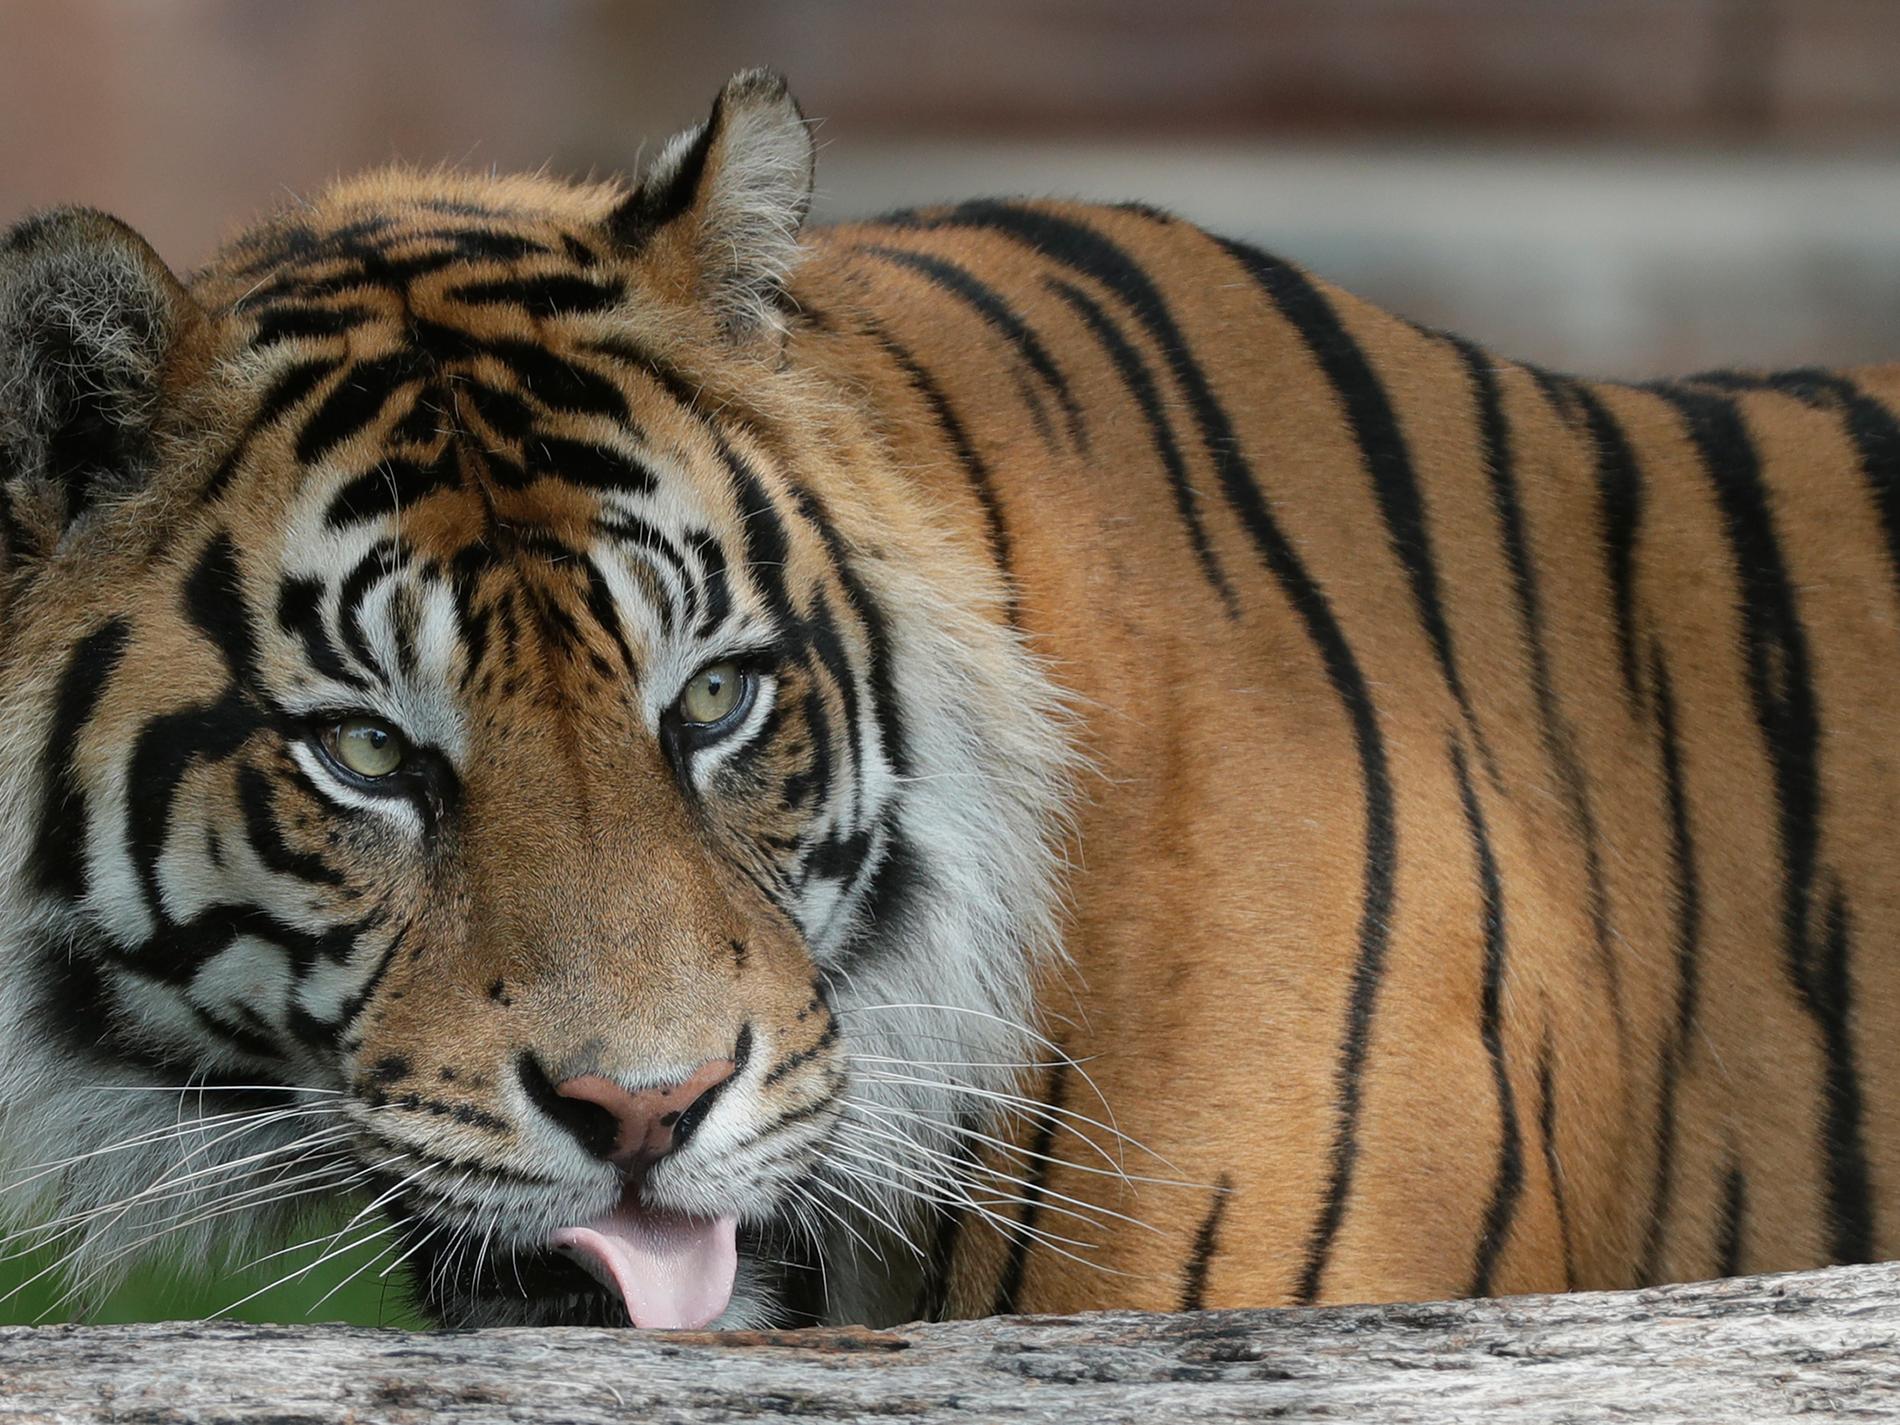 Tiger infångad efter upprepade attacker